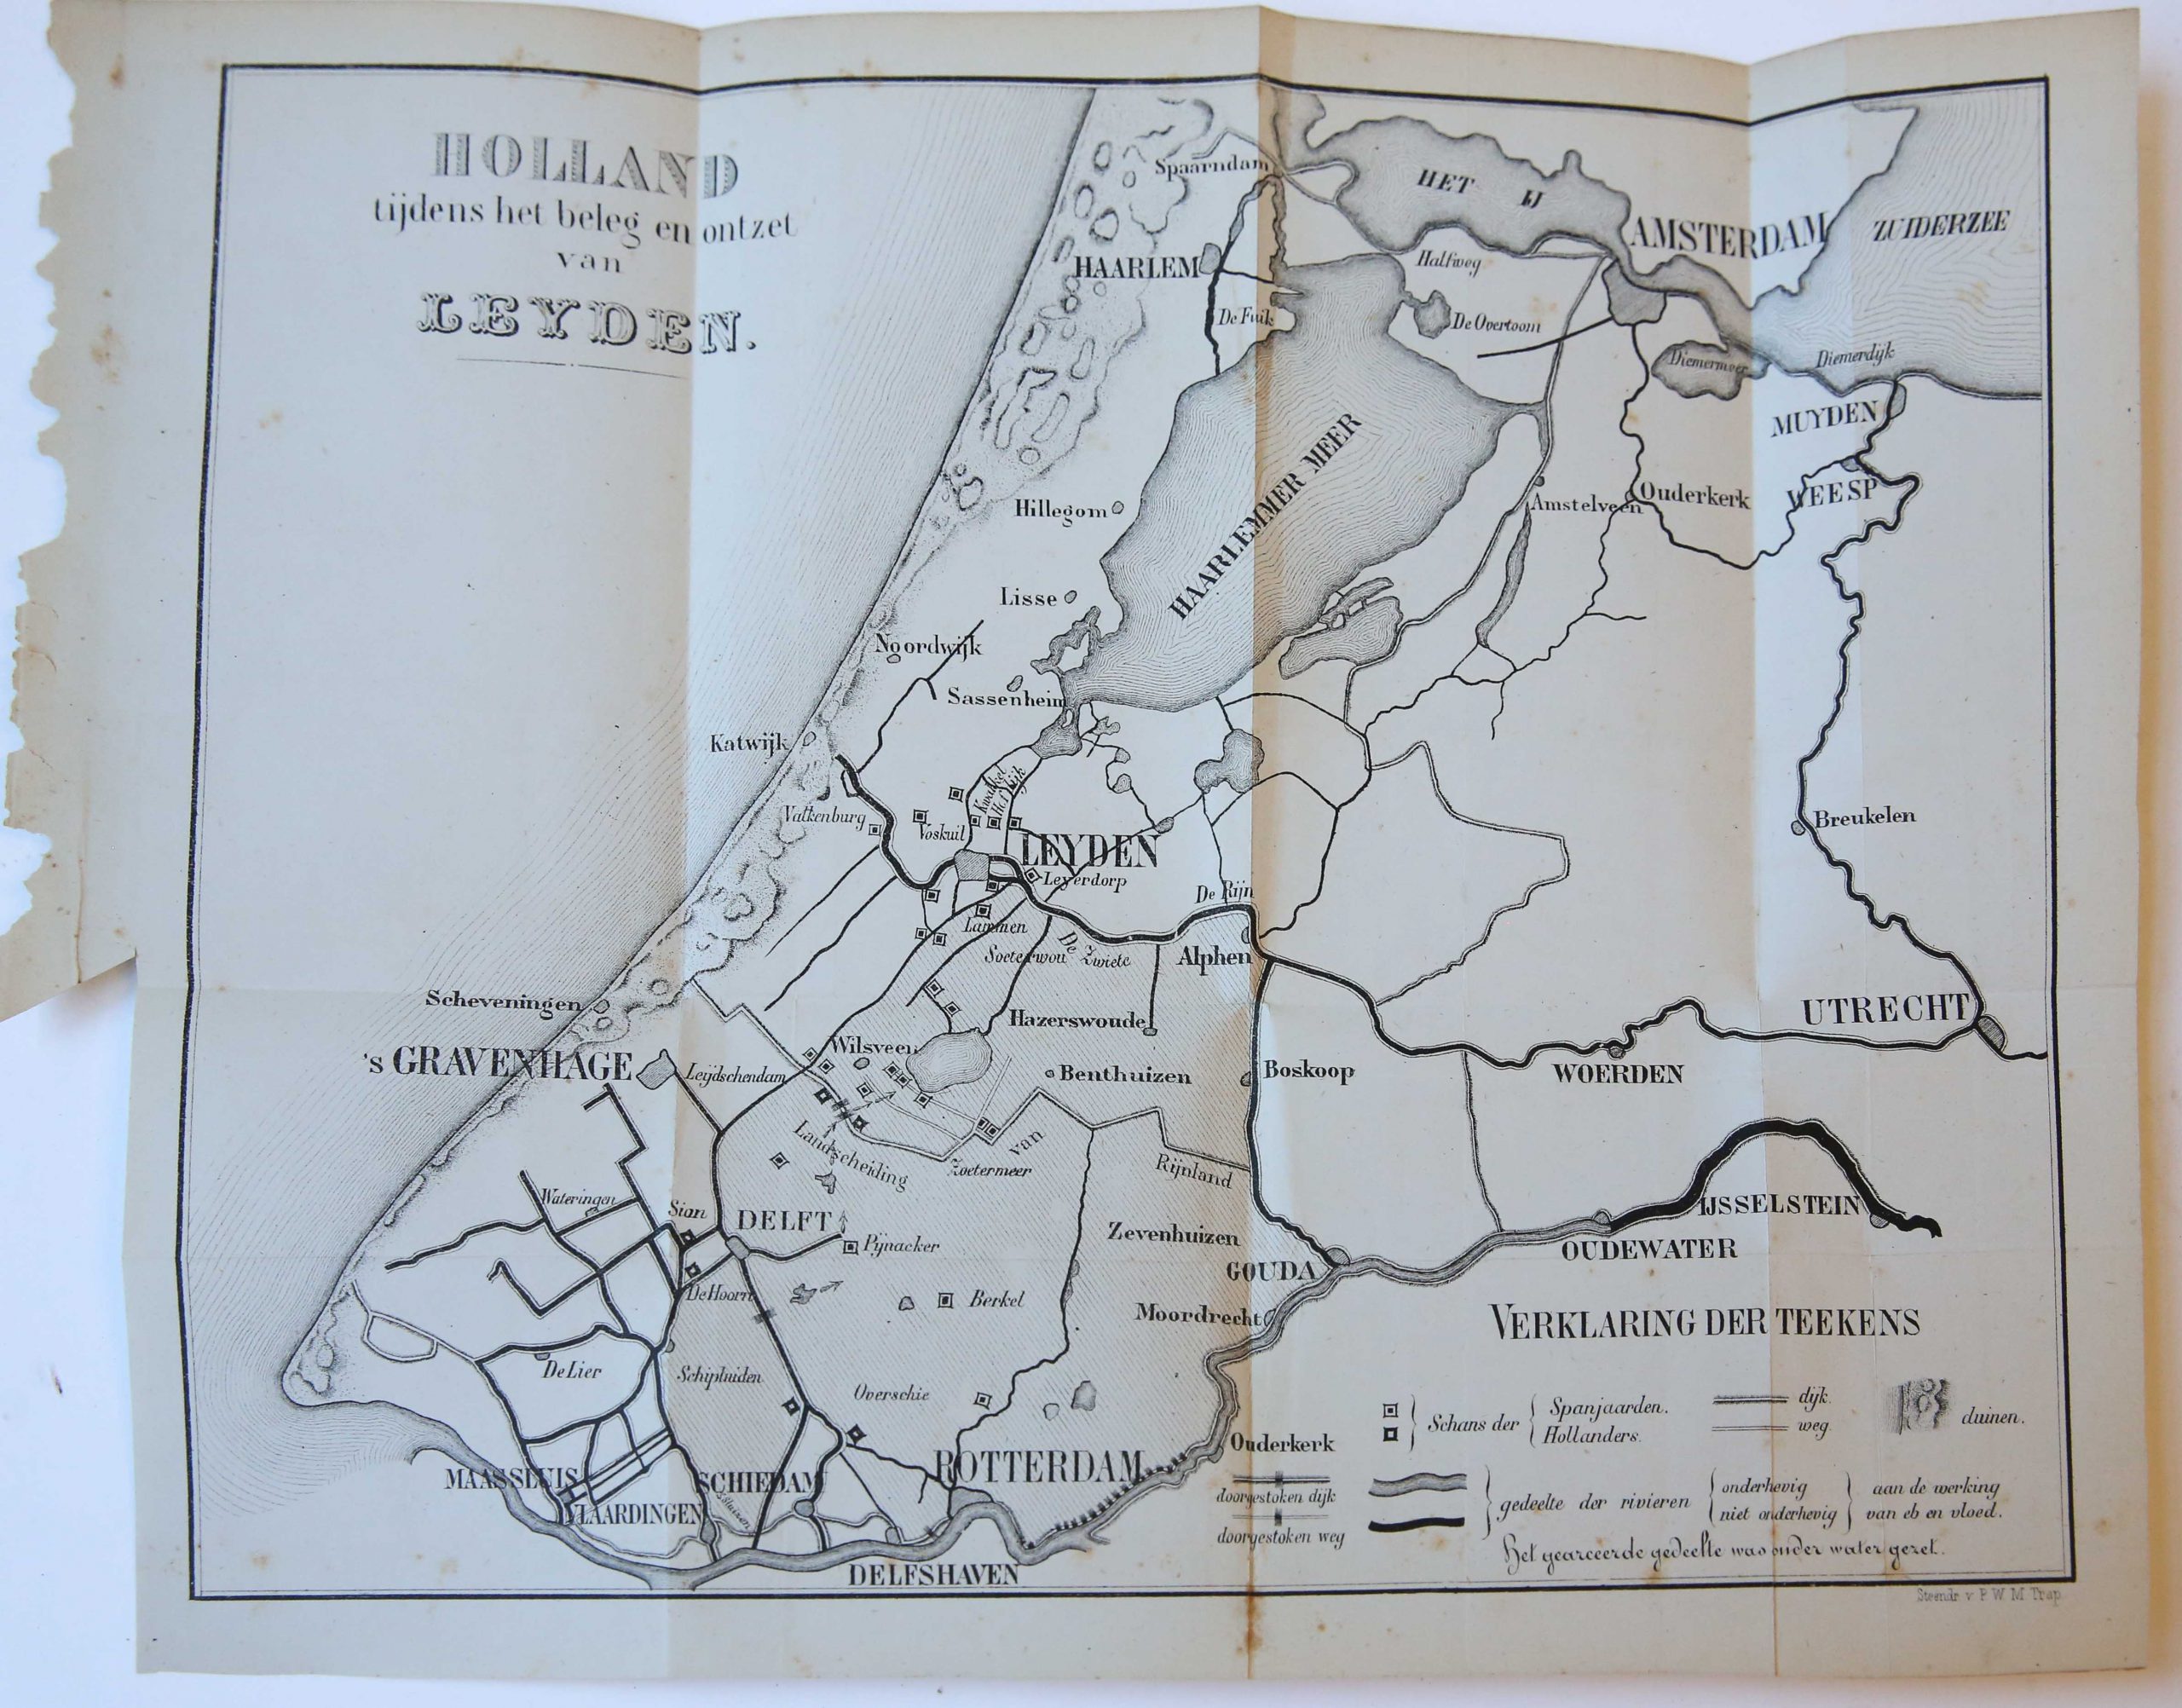 Cartography/Map: Holland tijdens het beleg en ontzet van Leyden.